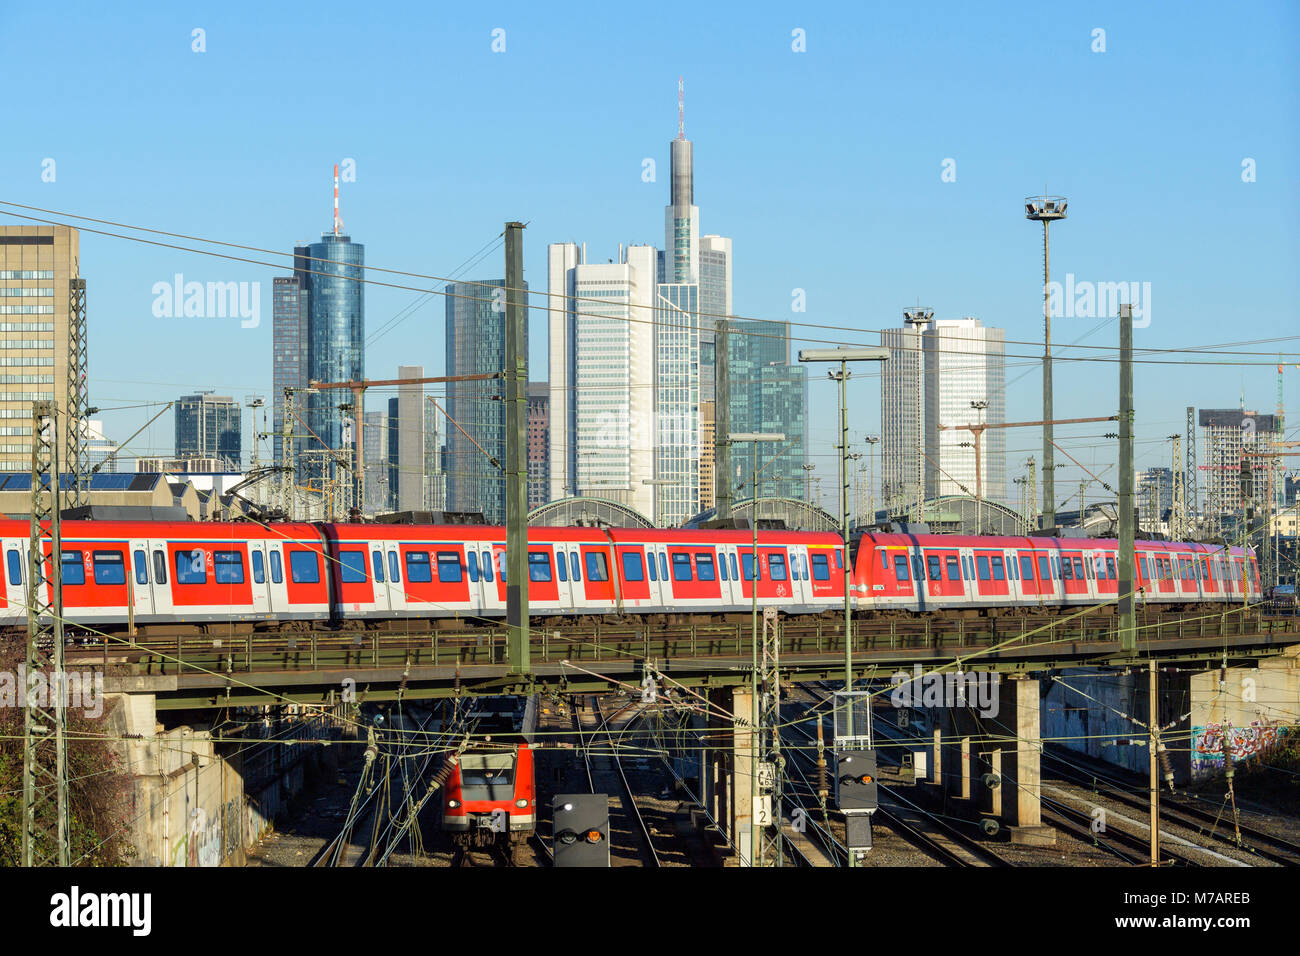 Regionale Zug vor der Skyline, Frankfurt am Main, Hessen, Deutschland Stockfoto